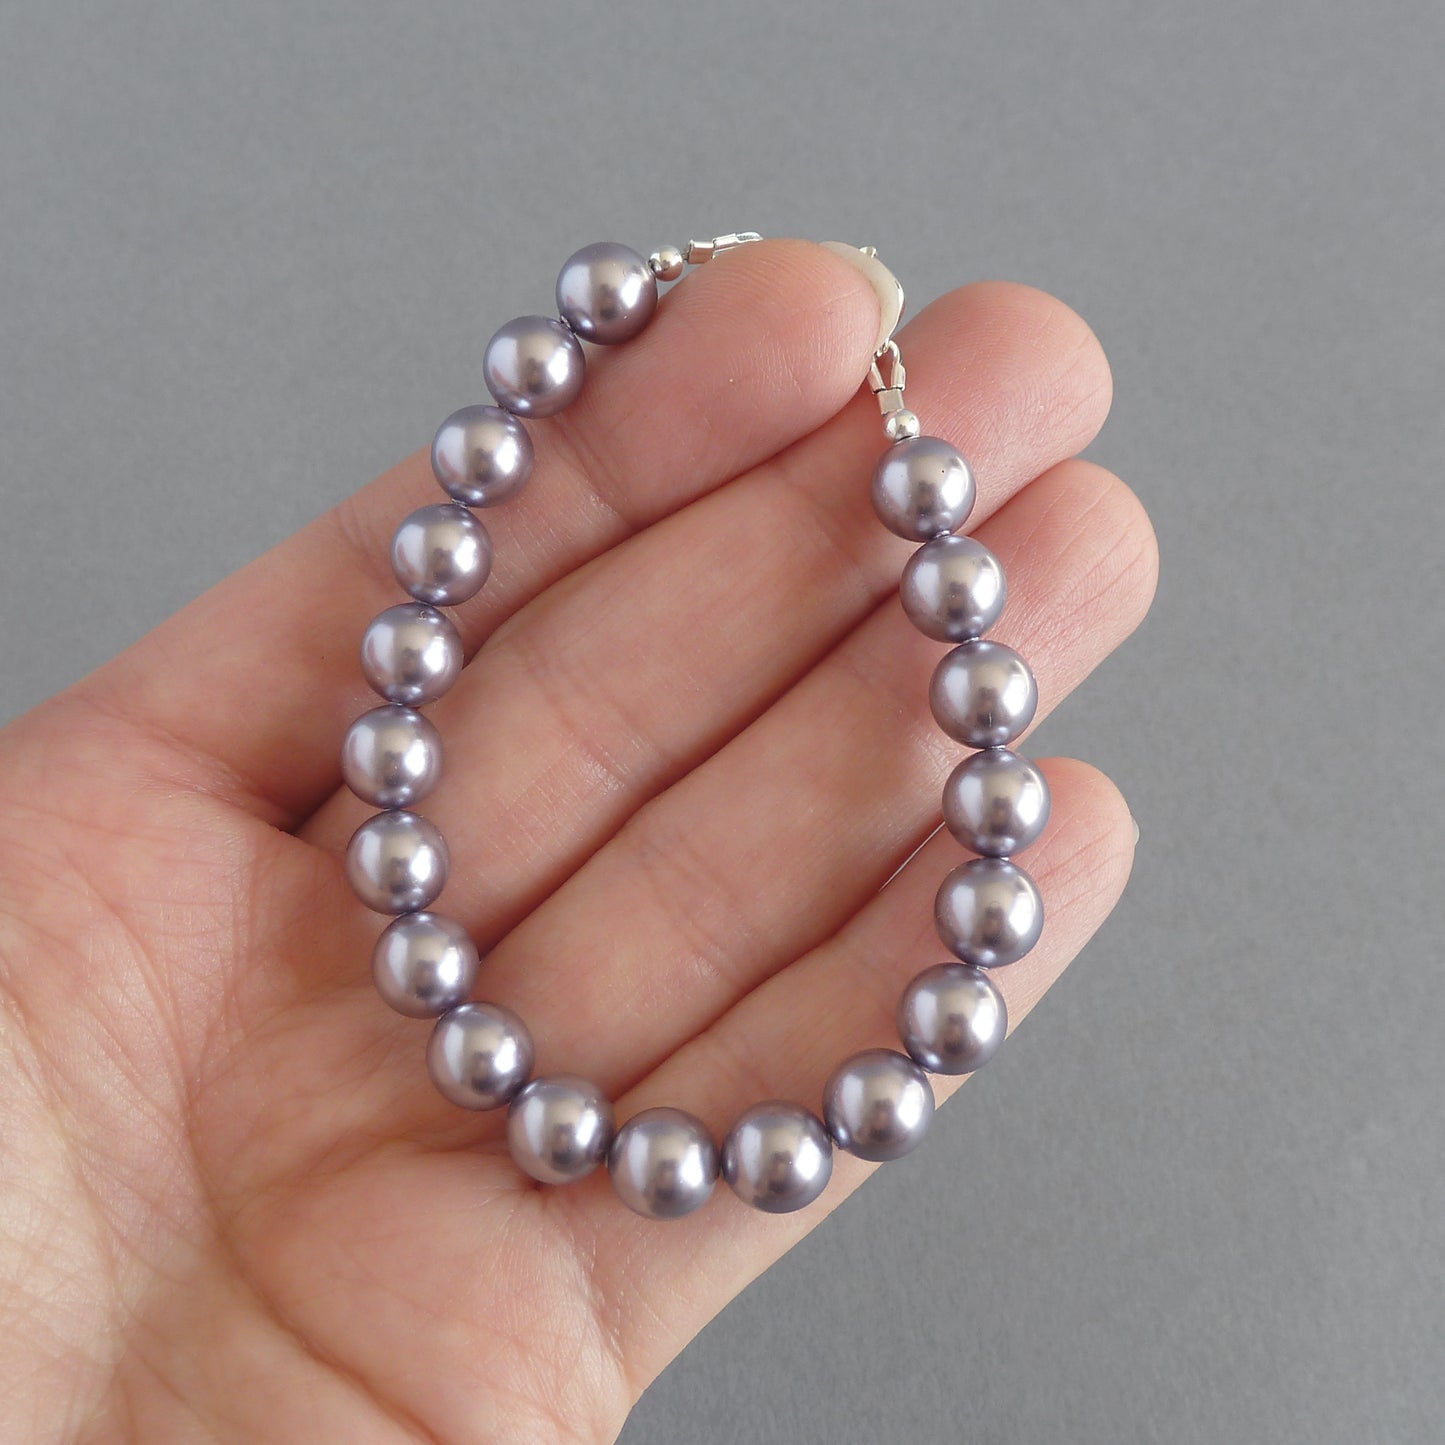 Lilac pearl bridesmaids bracelets